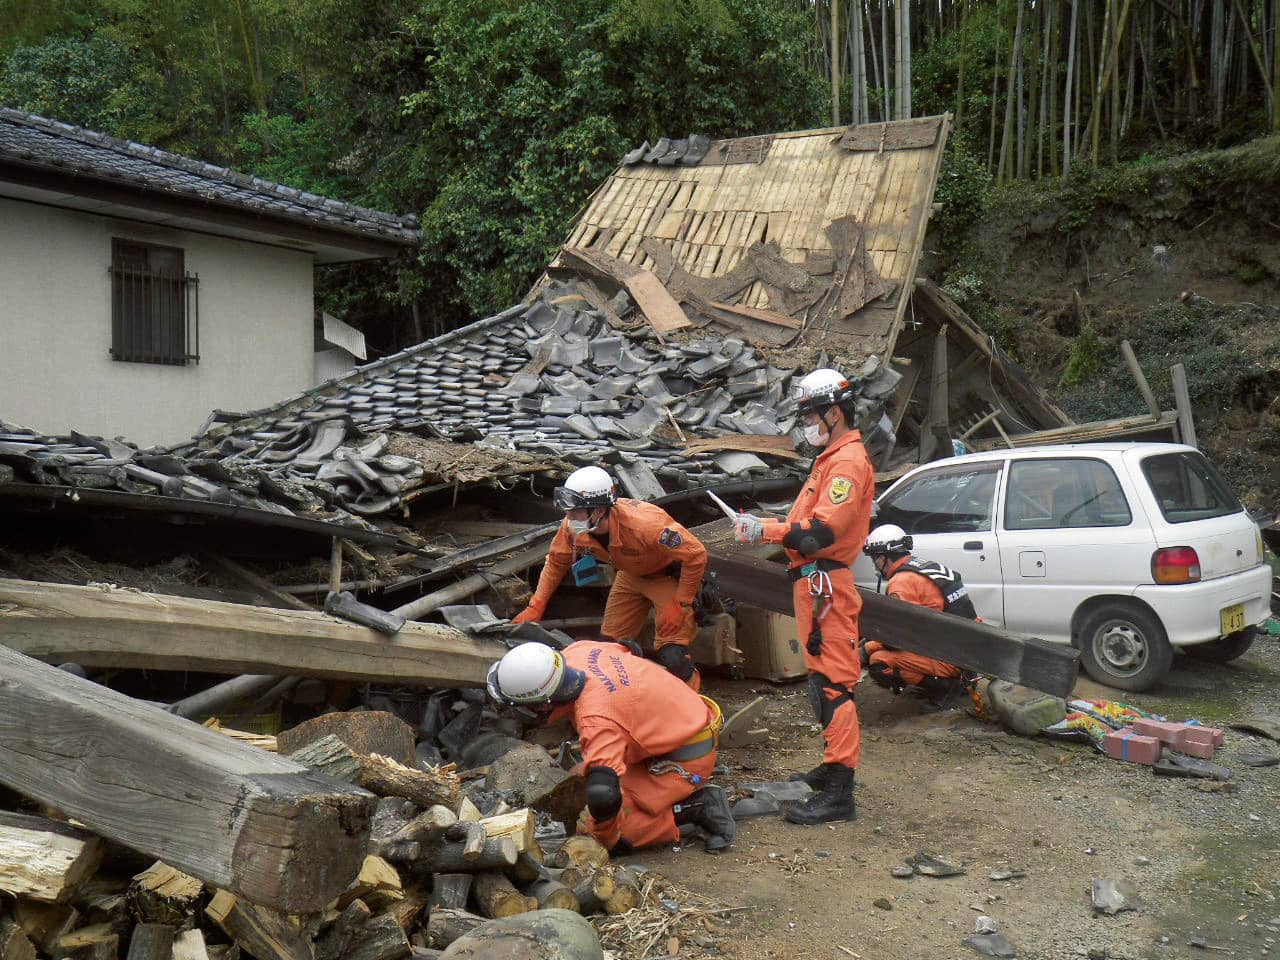 要救助者捜索、倒壊家屋調査などの活動を行う香川県大隊